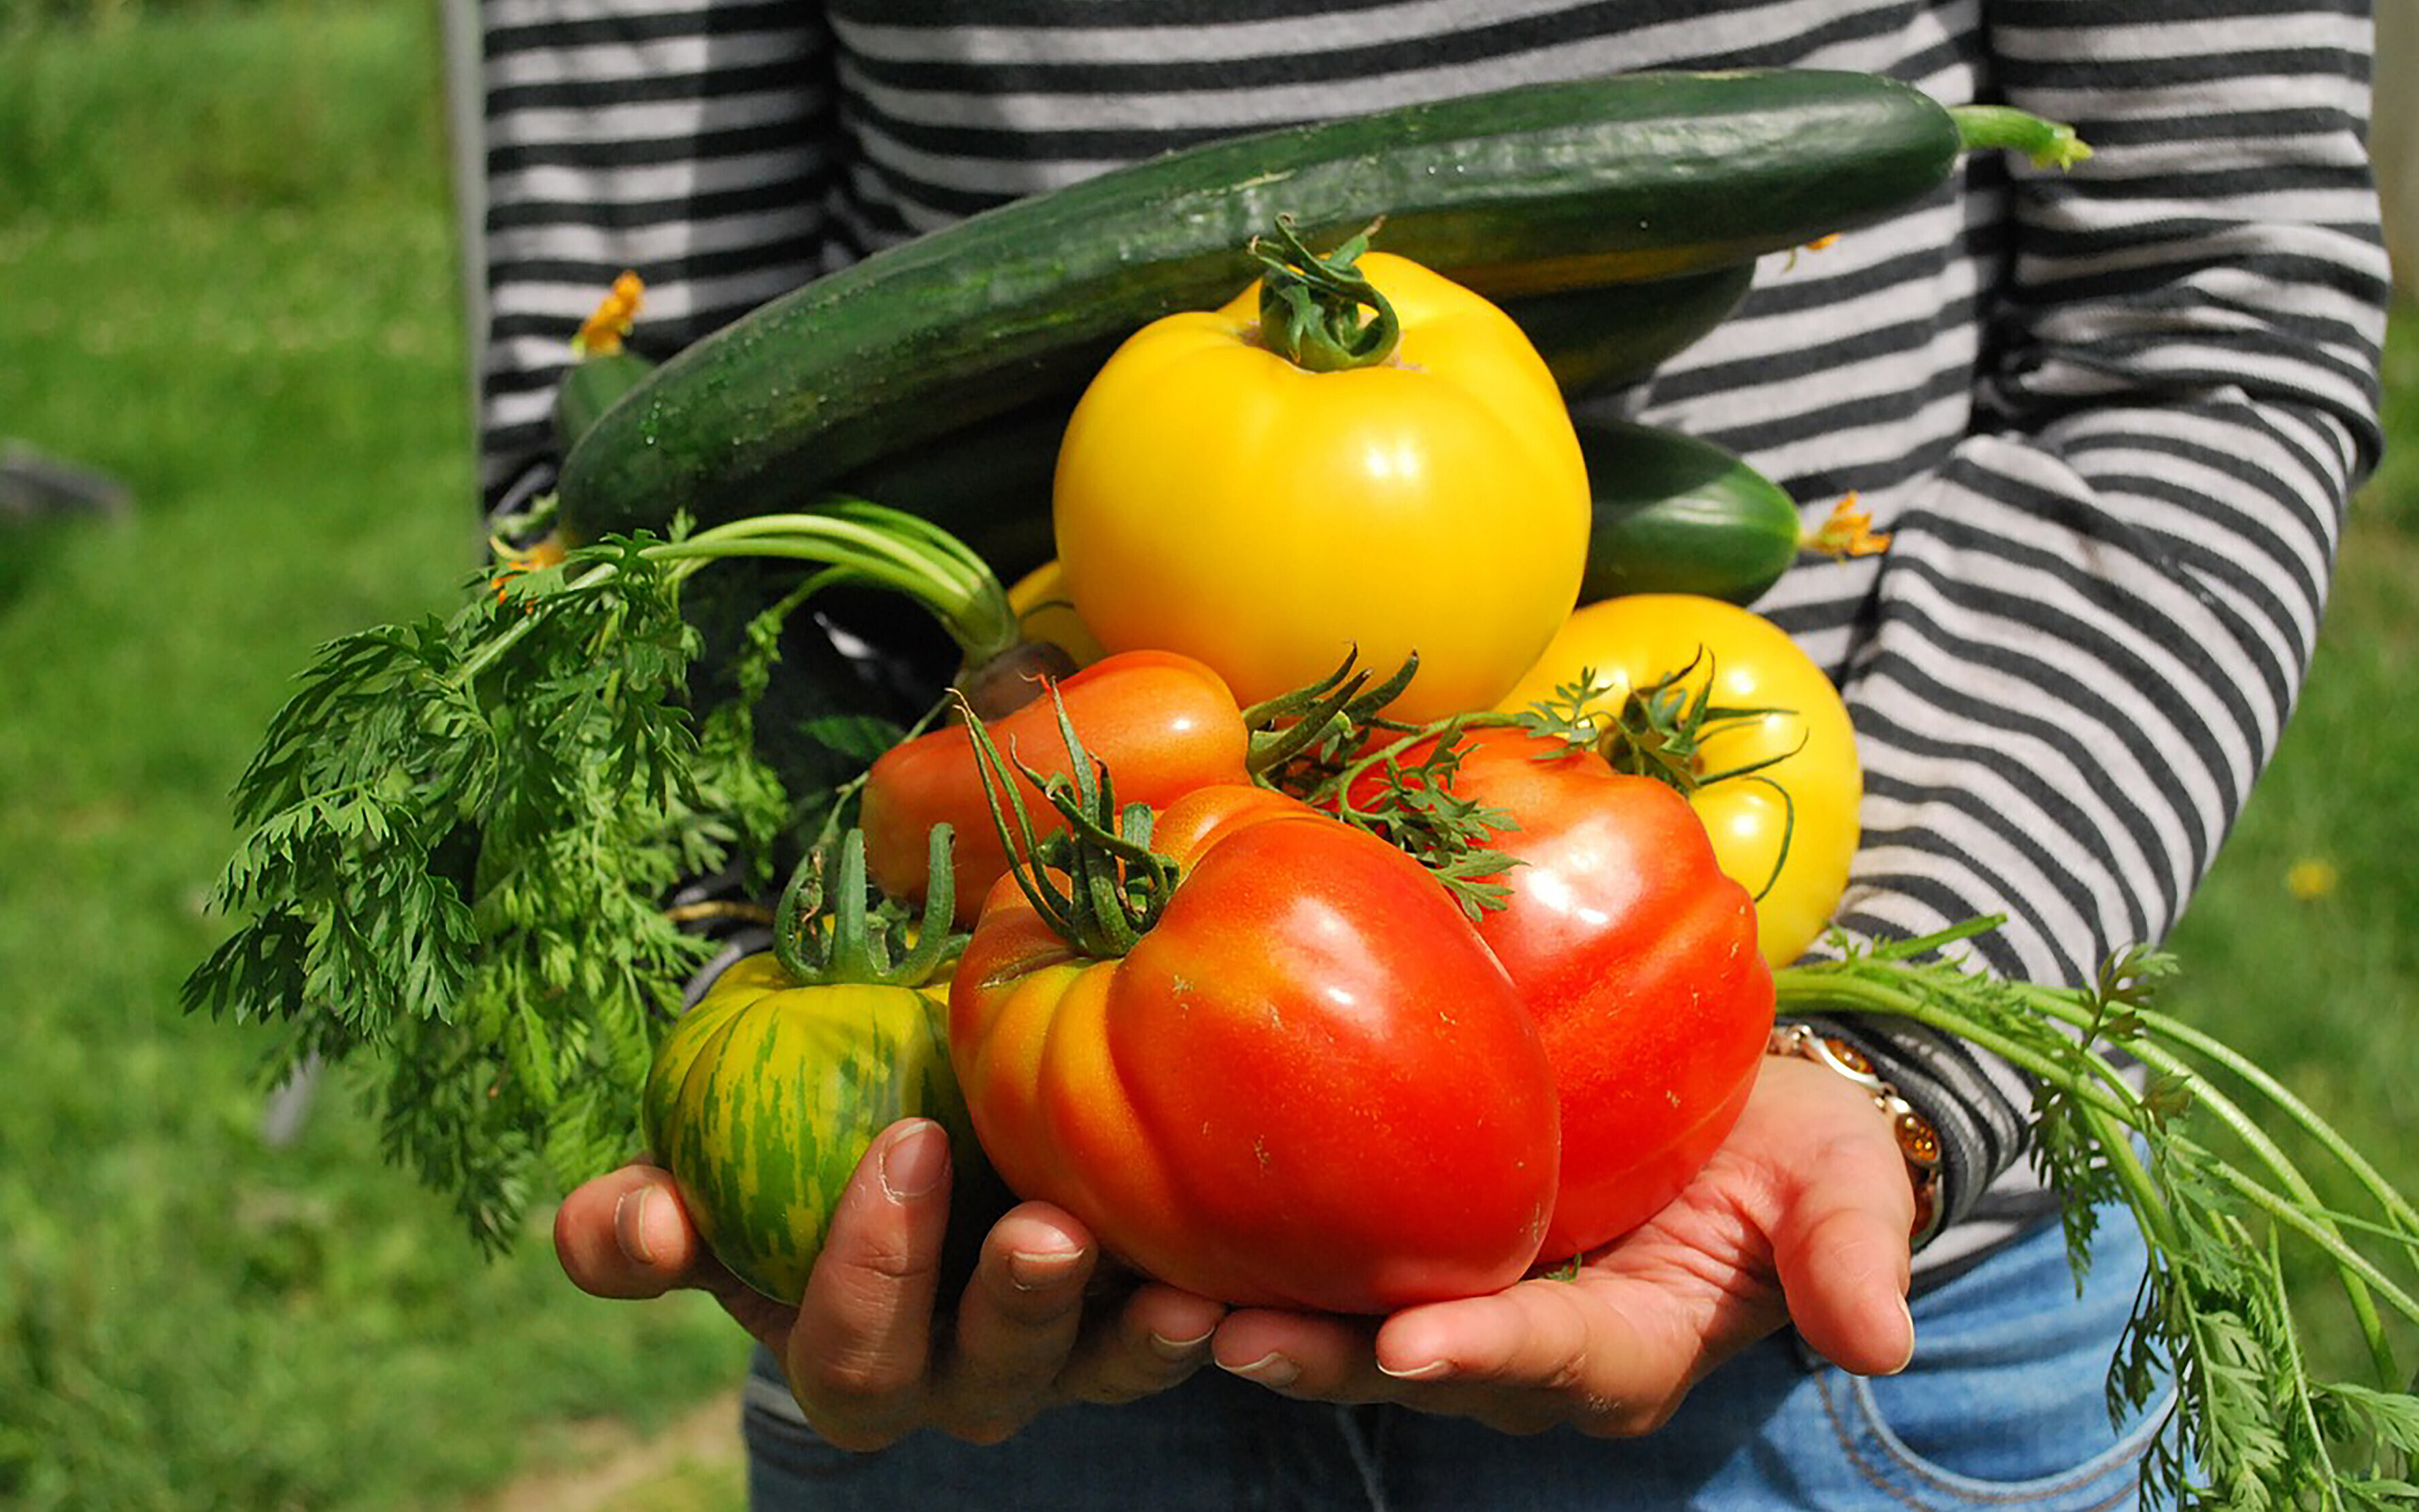 Gemüse trägt diverses Gemüse auf beiden Händen